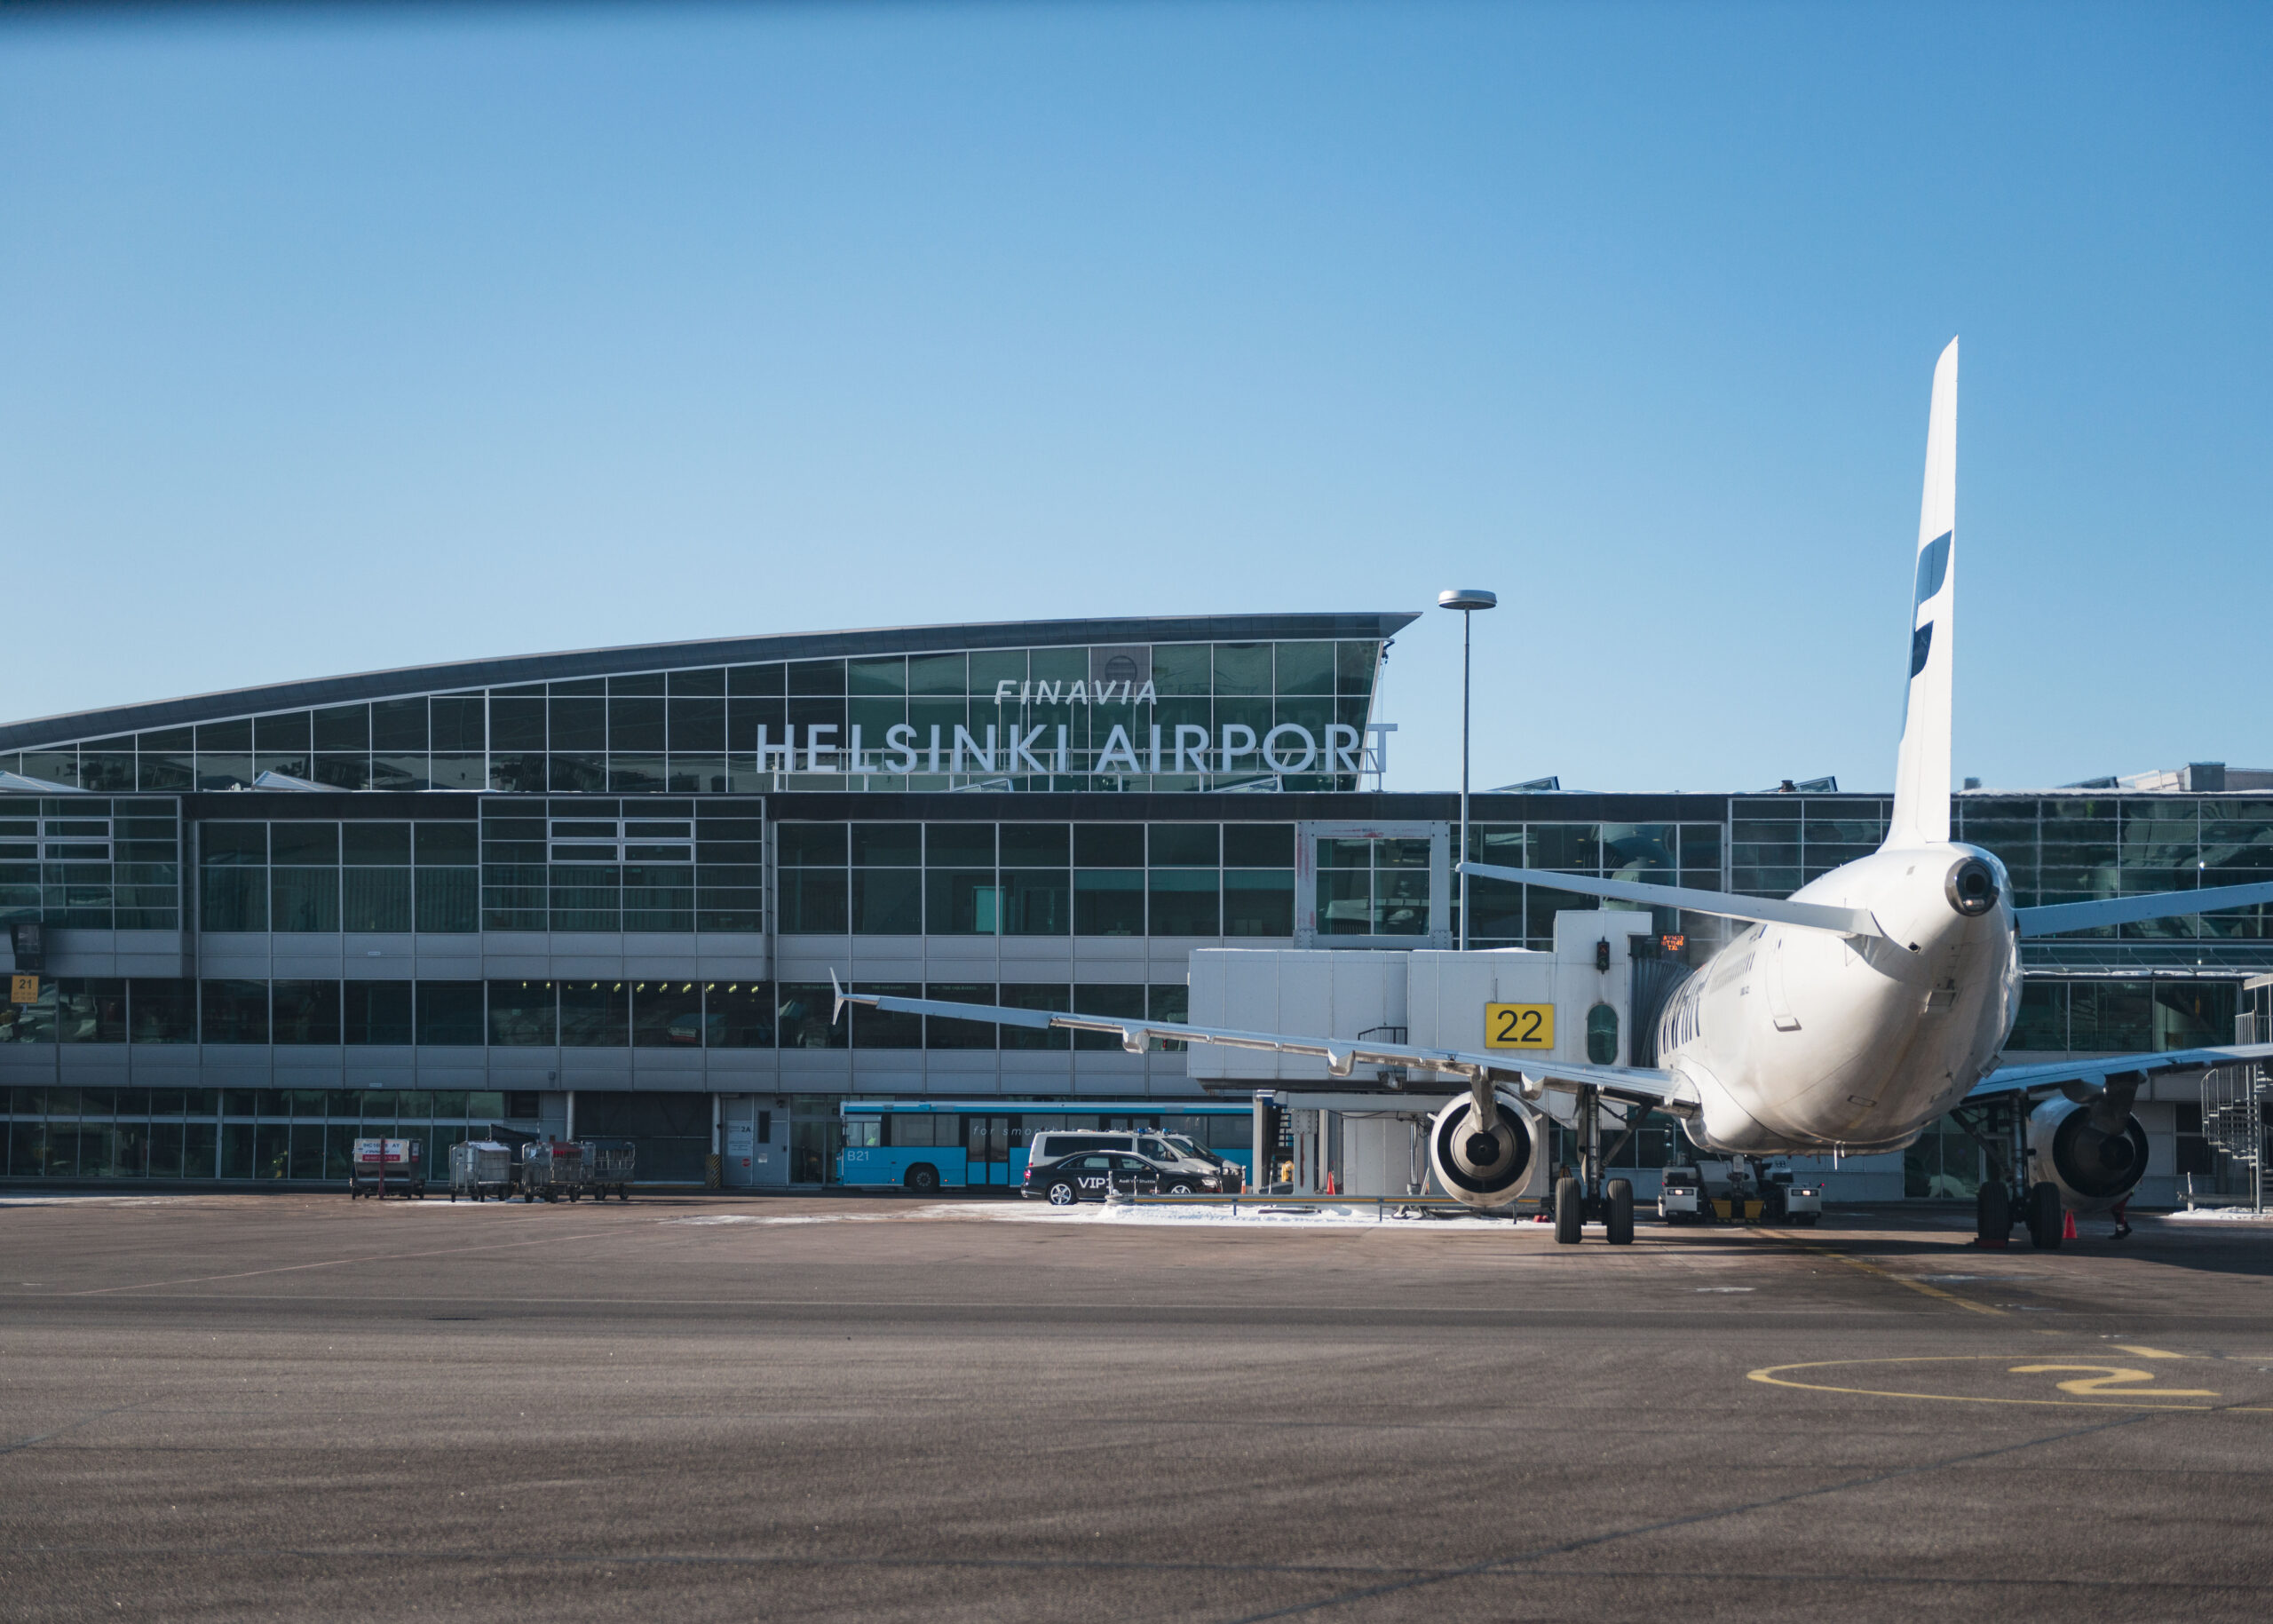 Helsinki-Vantaan lentoaseman asemataso ja Finnairin lentokone